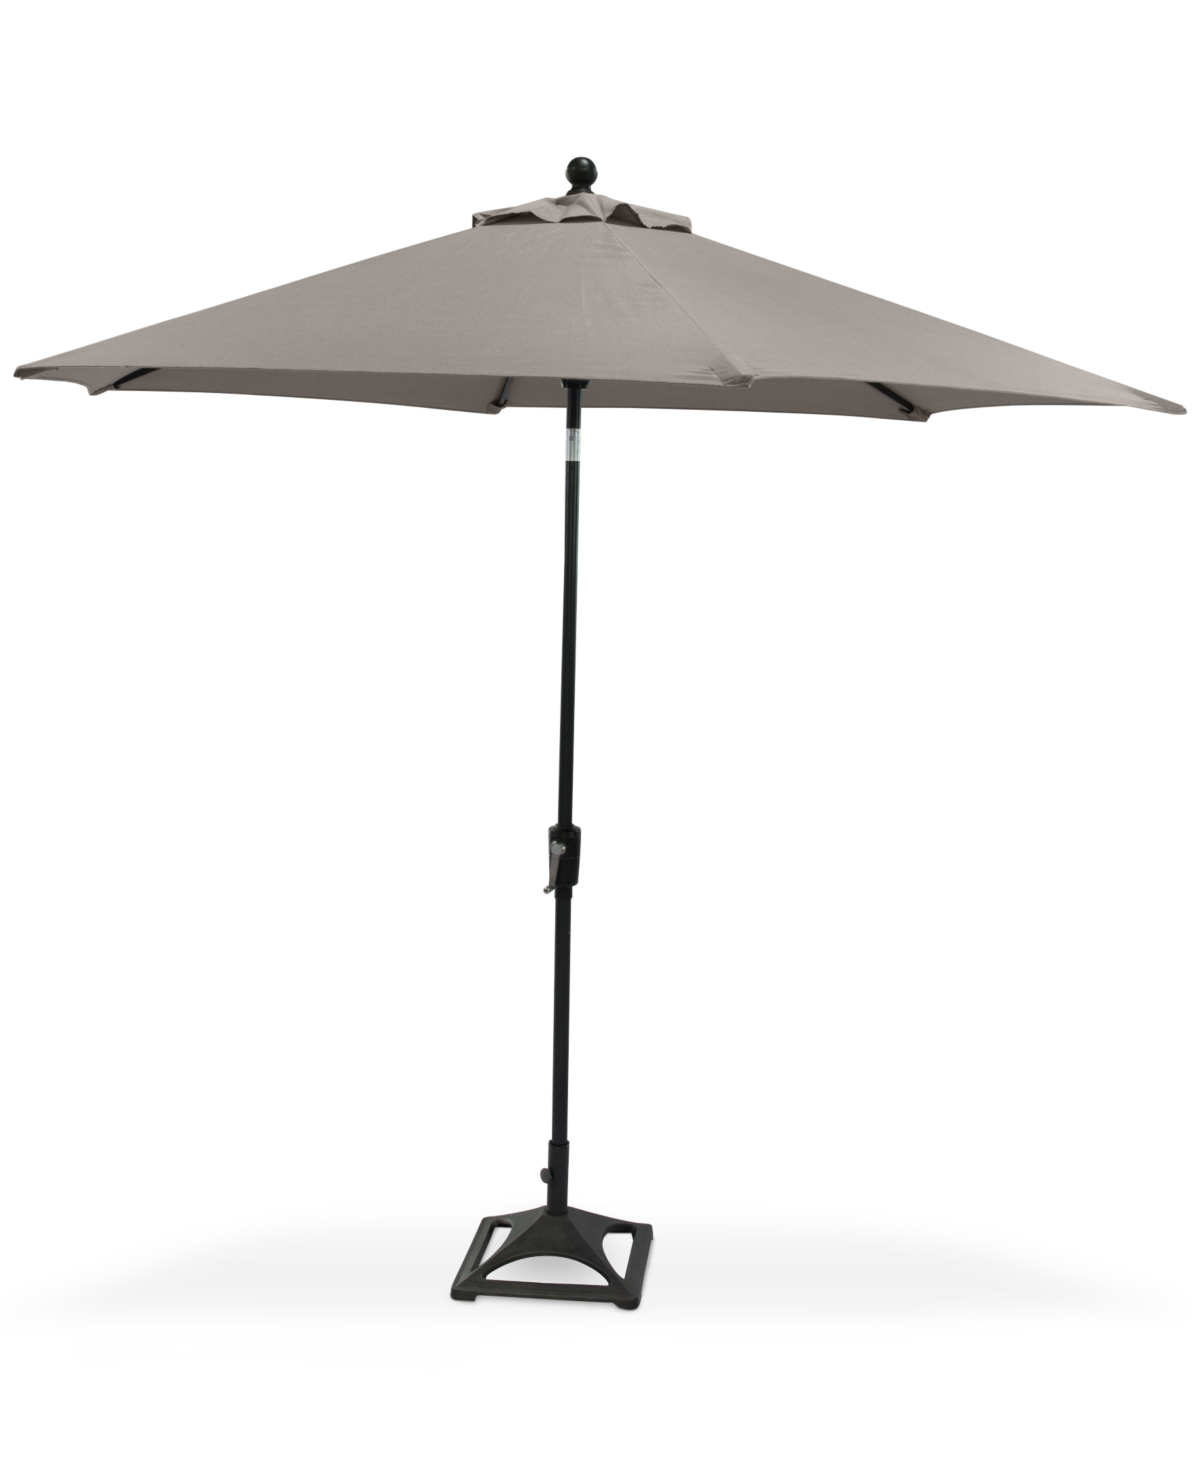 10453325 Marlough Ii Outdoor 9 Umbrella with Base, Created  sku 10453325